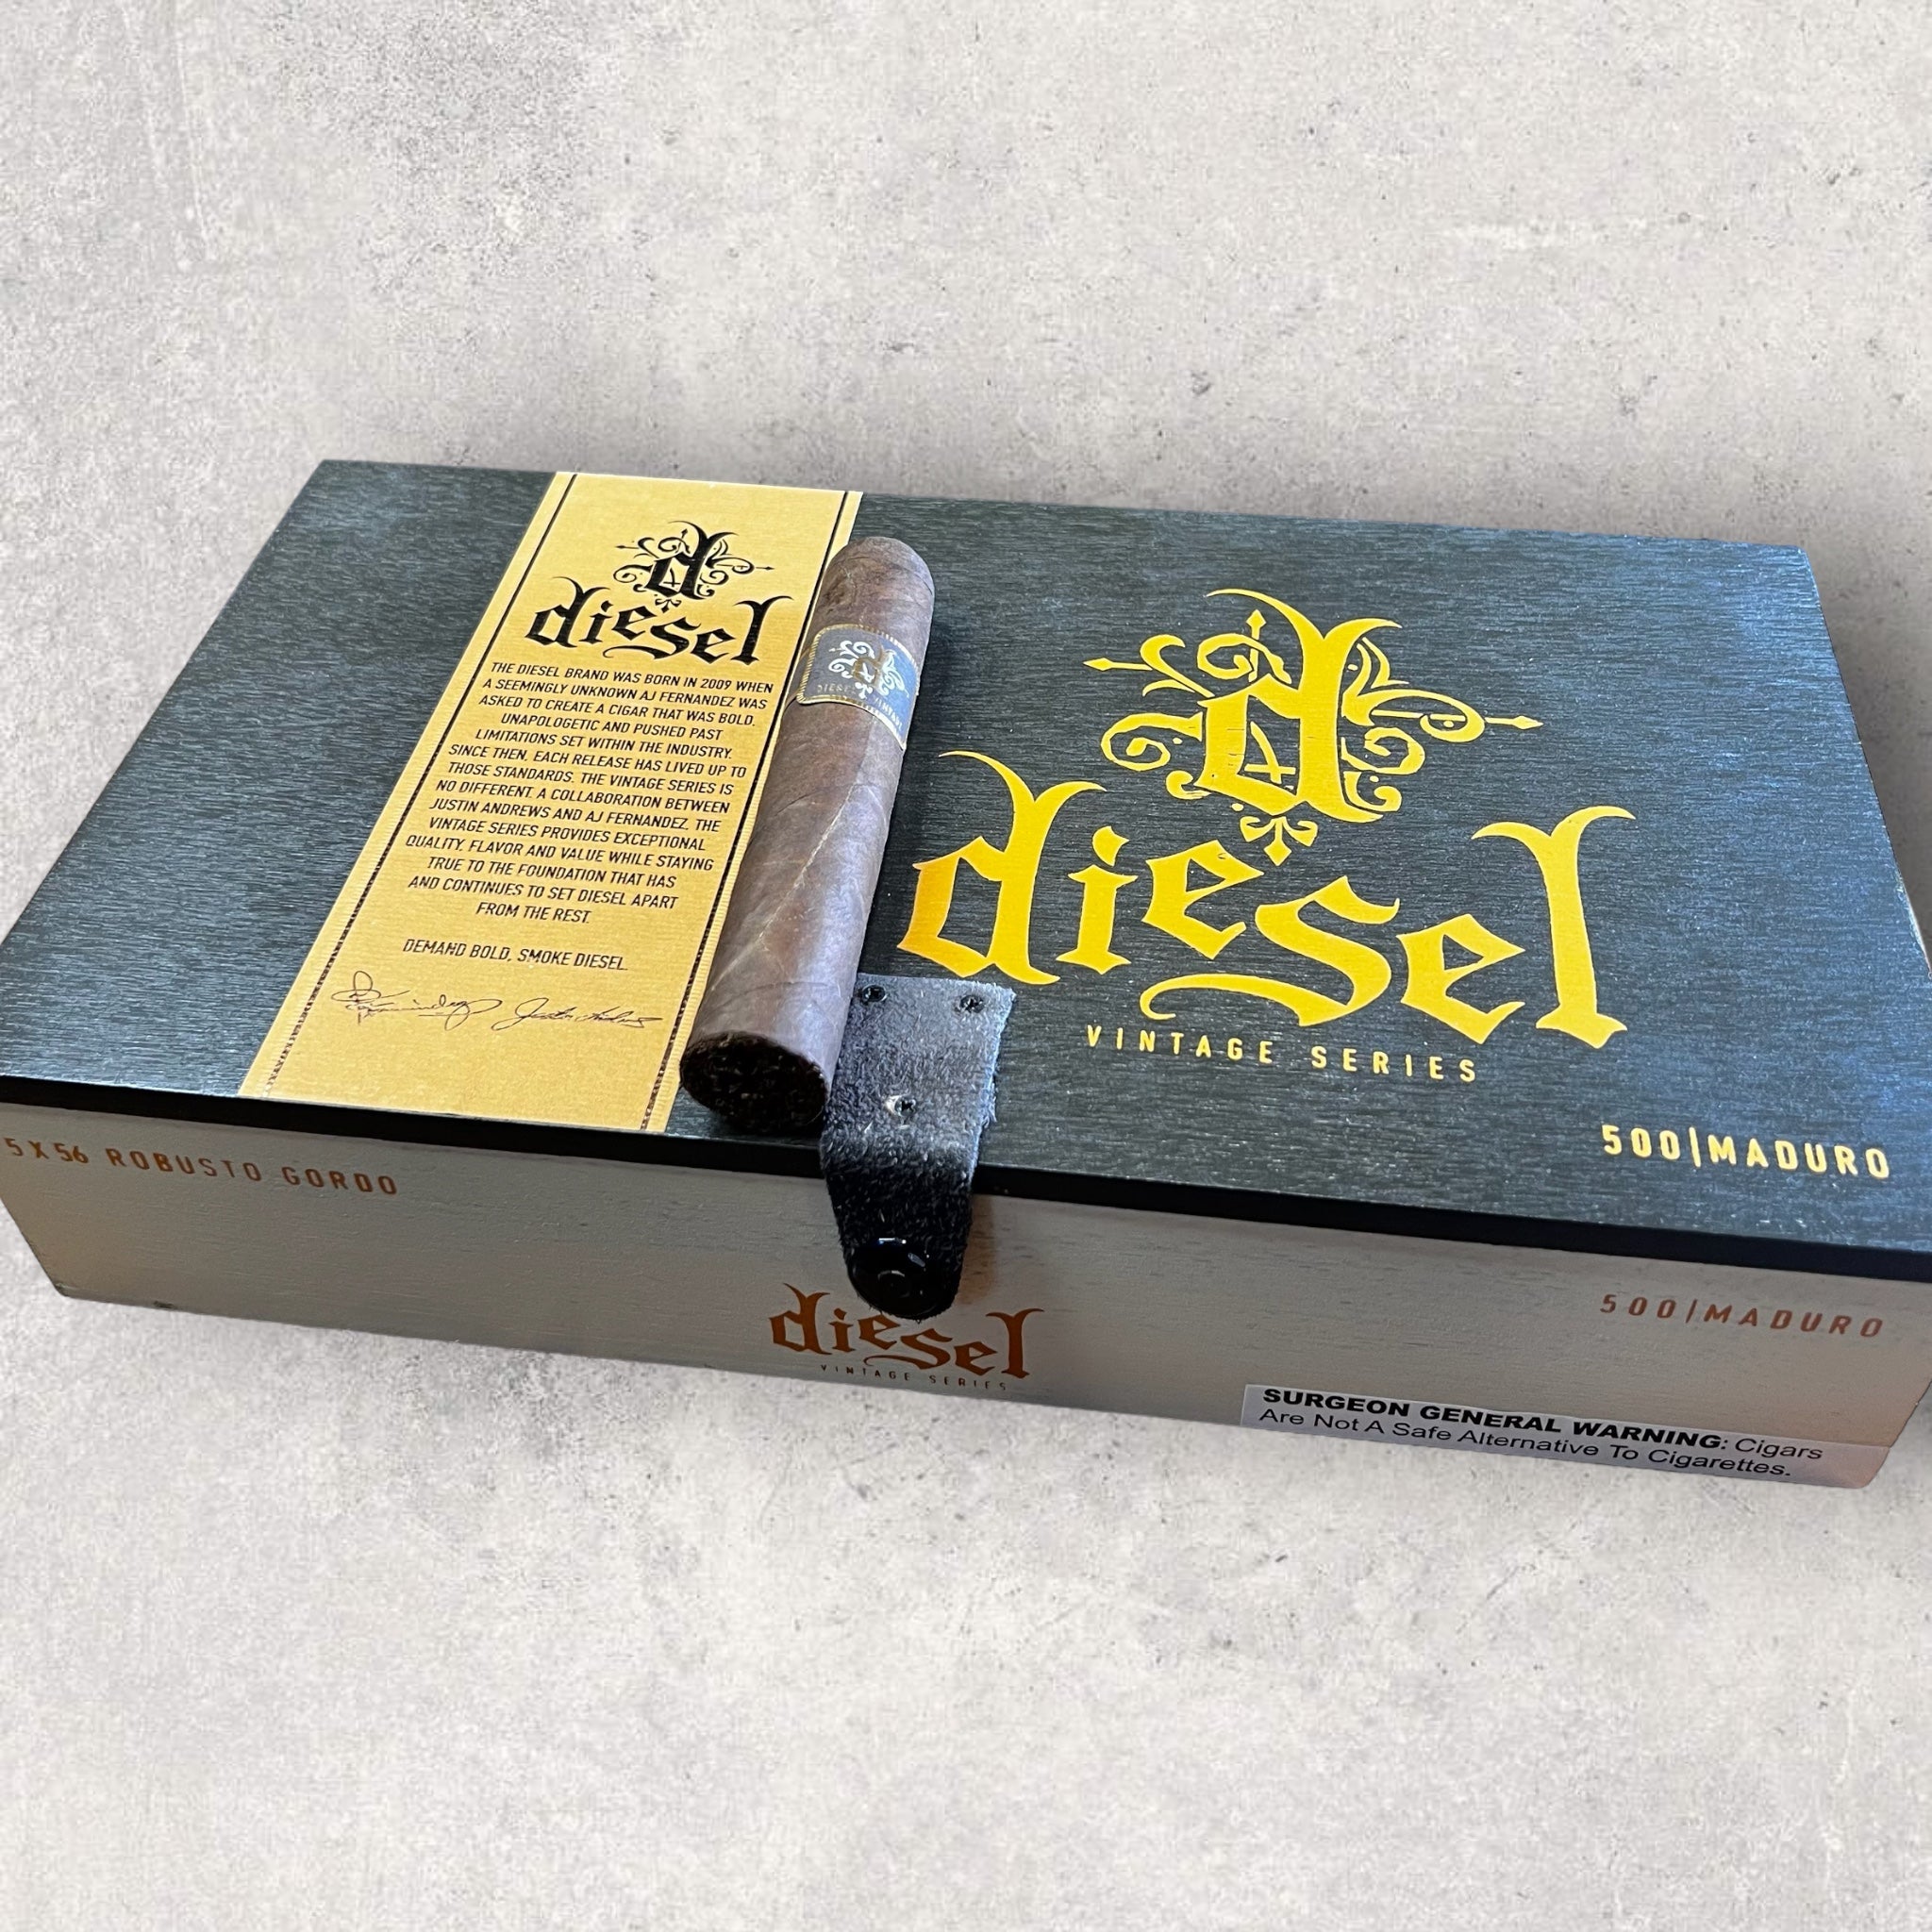 Diesel Vintage Series Maduro Robusto Gordo - Cigar 30